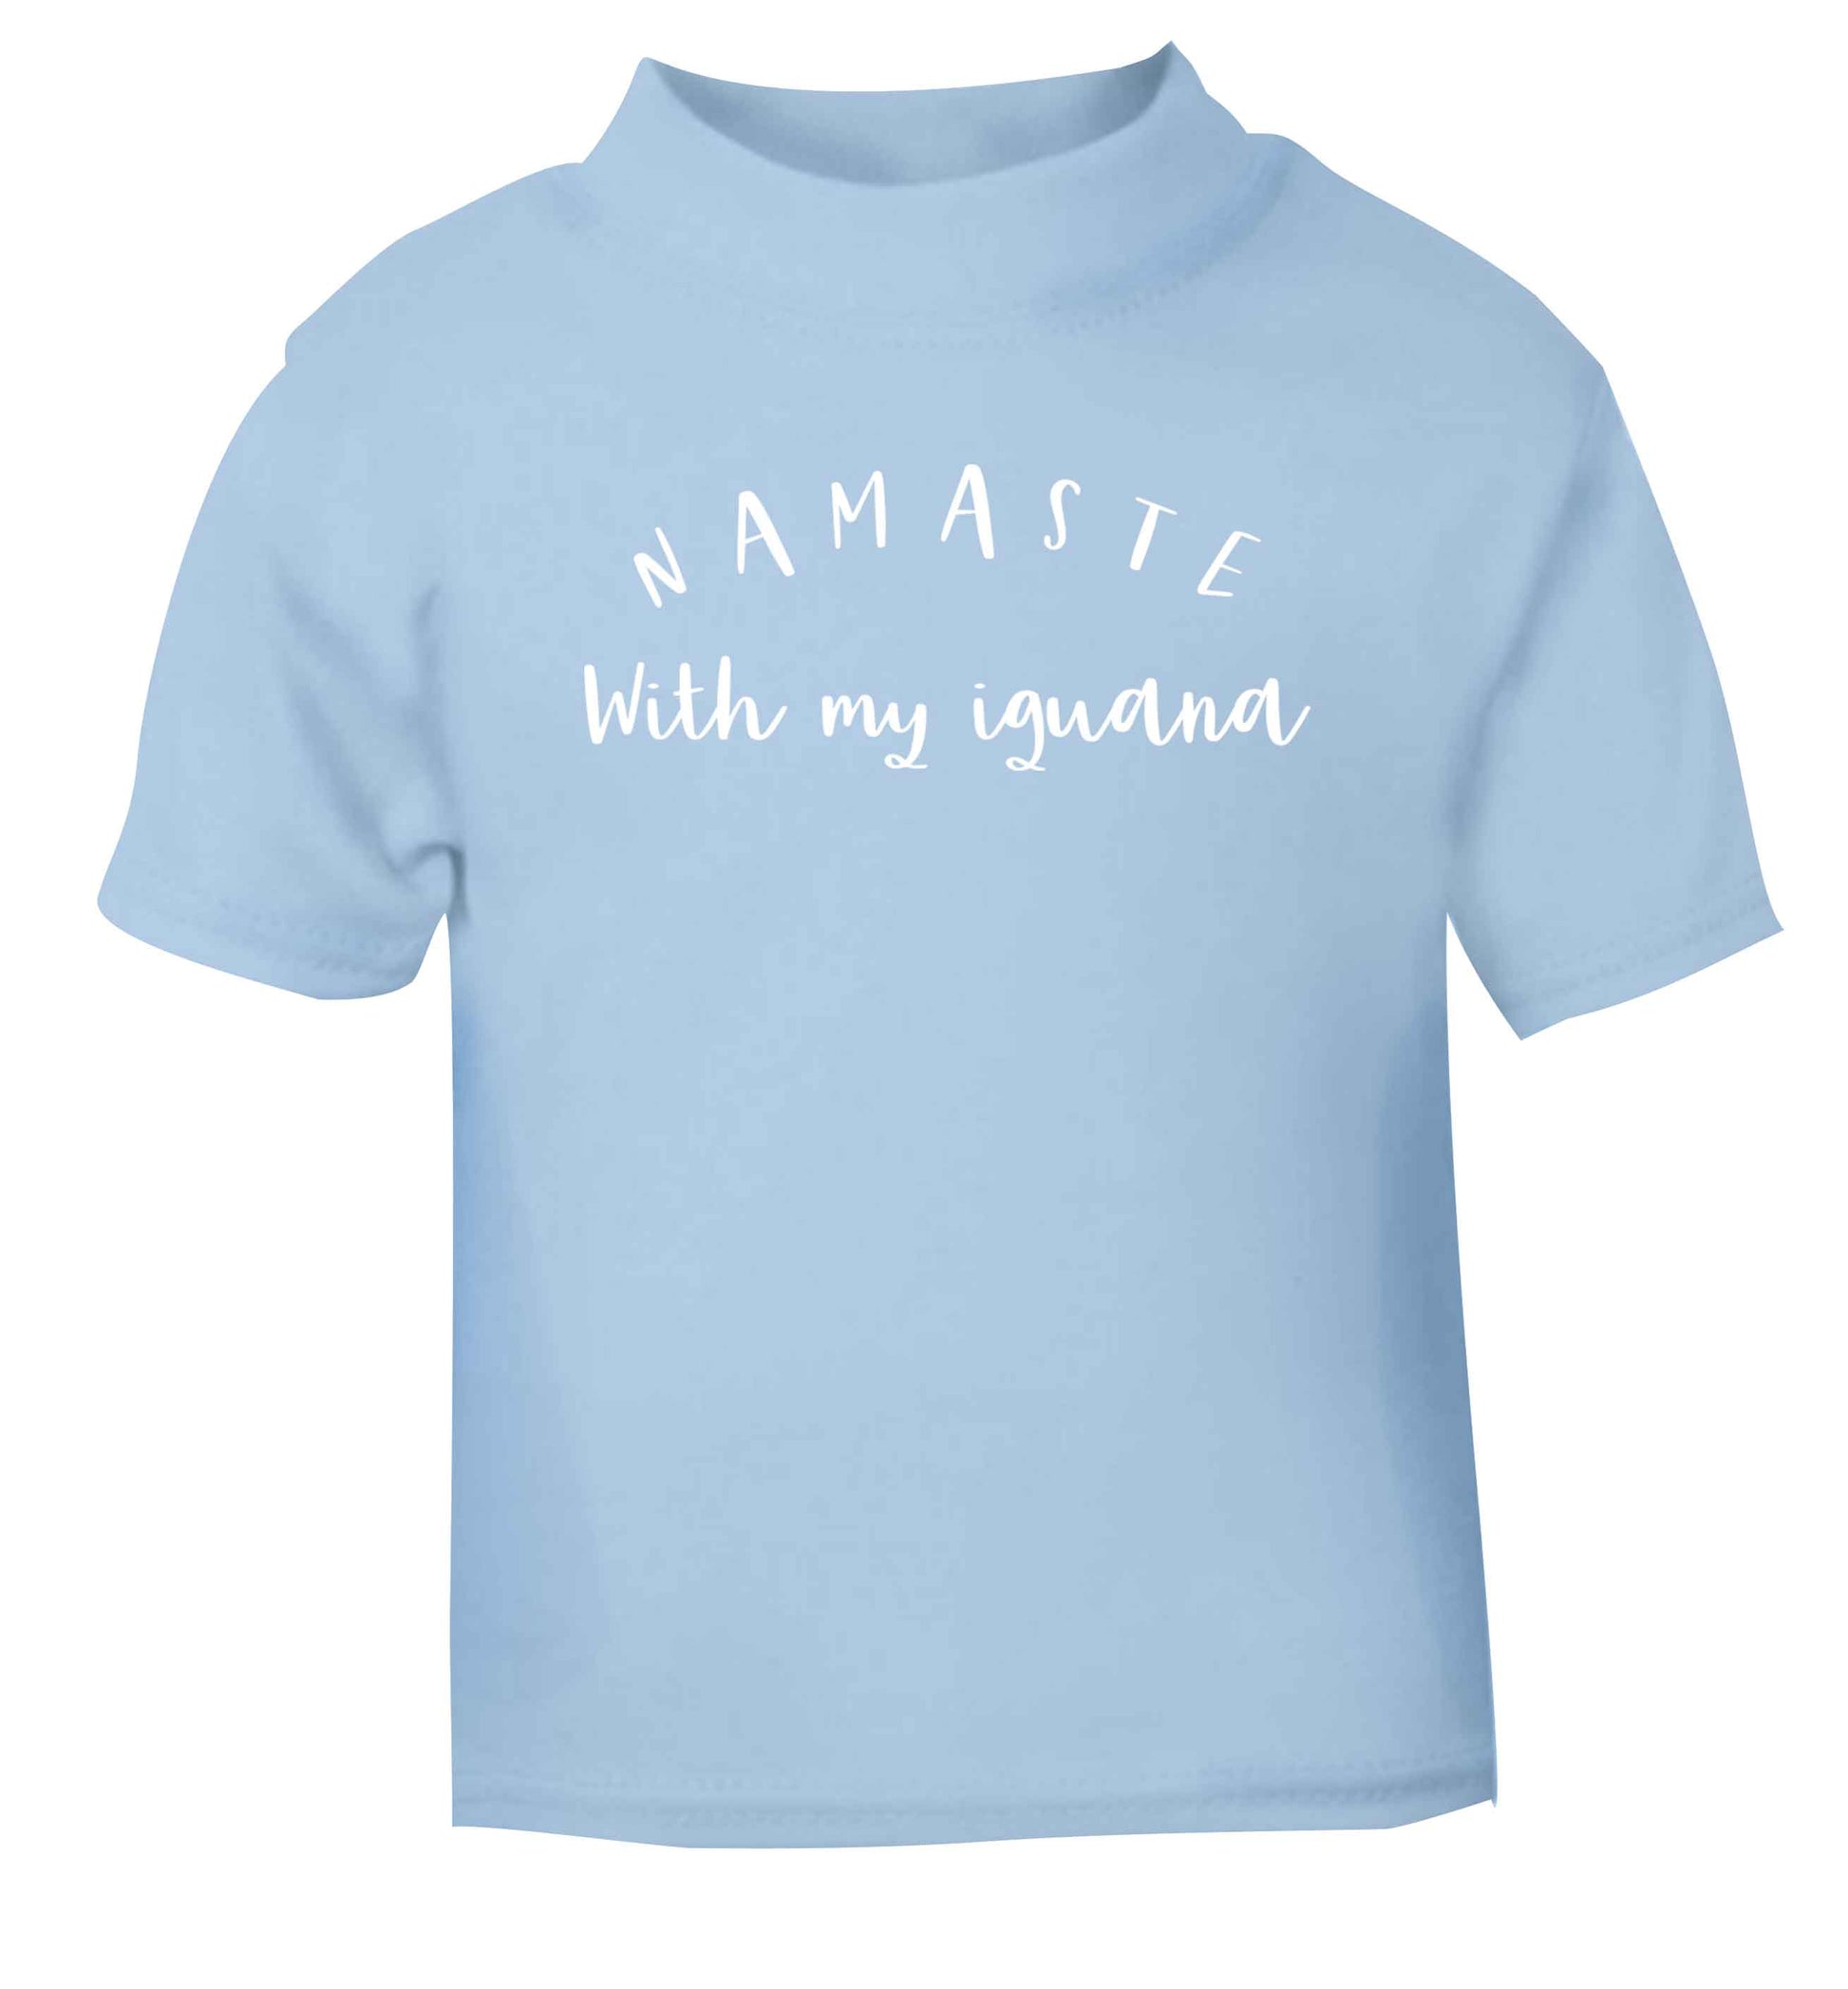 Namaste with my iguana light blue Baby Toddler Tshirt 2 Years